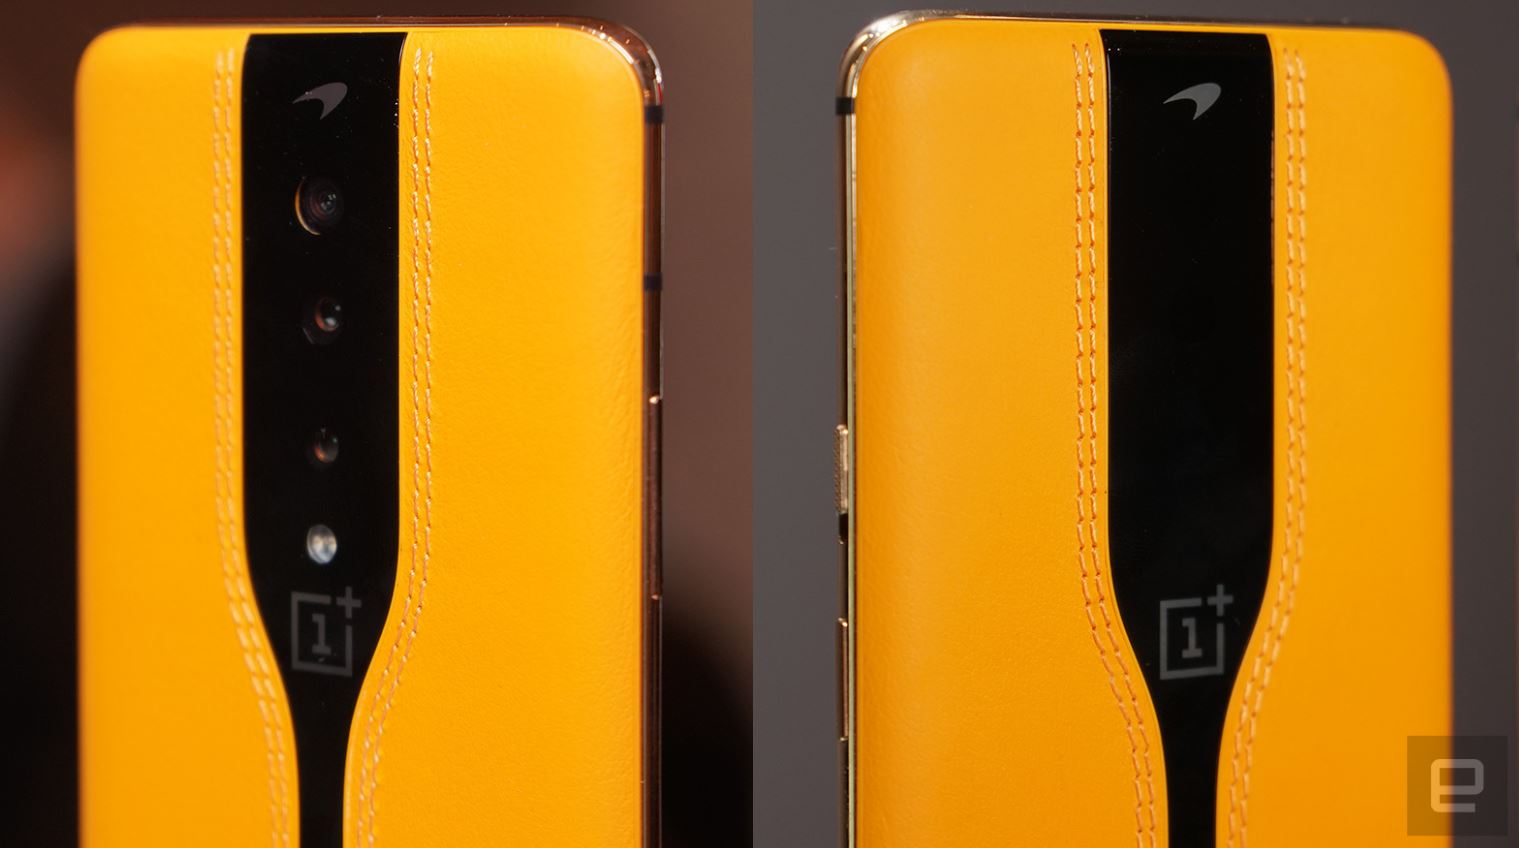 OnePlus Concept One smartphone kommer med osynliga kameror